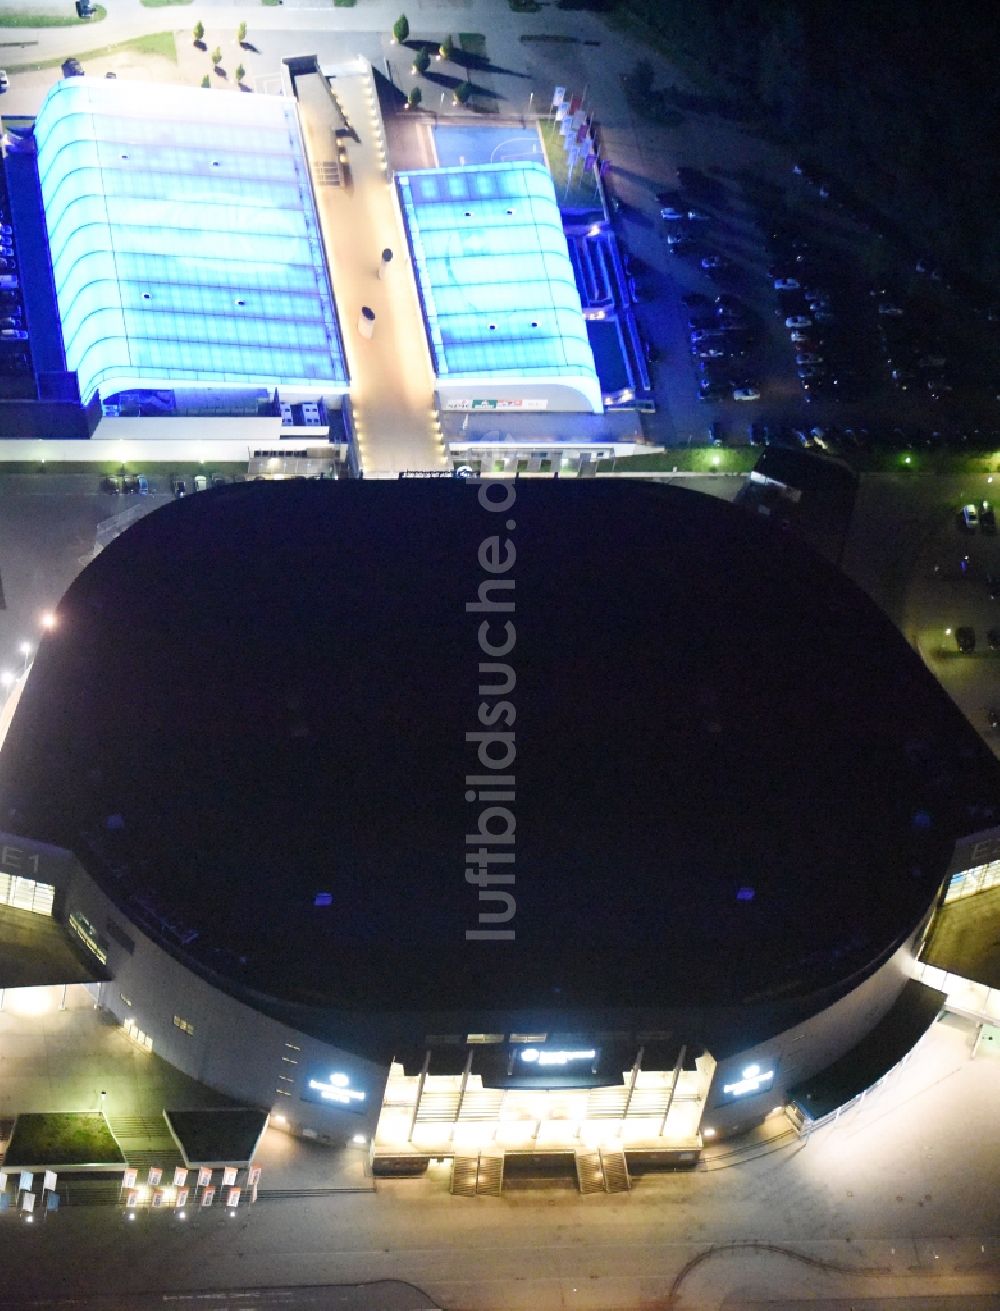 Hamburg bei Nacht von oben - Nacht- Beleuchtung der Barclaycard Arena (vormals O2 World Hamburg, Color Line Arena), eine Multifunktionsarena für sportliche und kulturelle Veranstaltungen in Hamburg